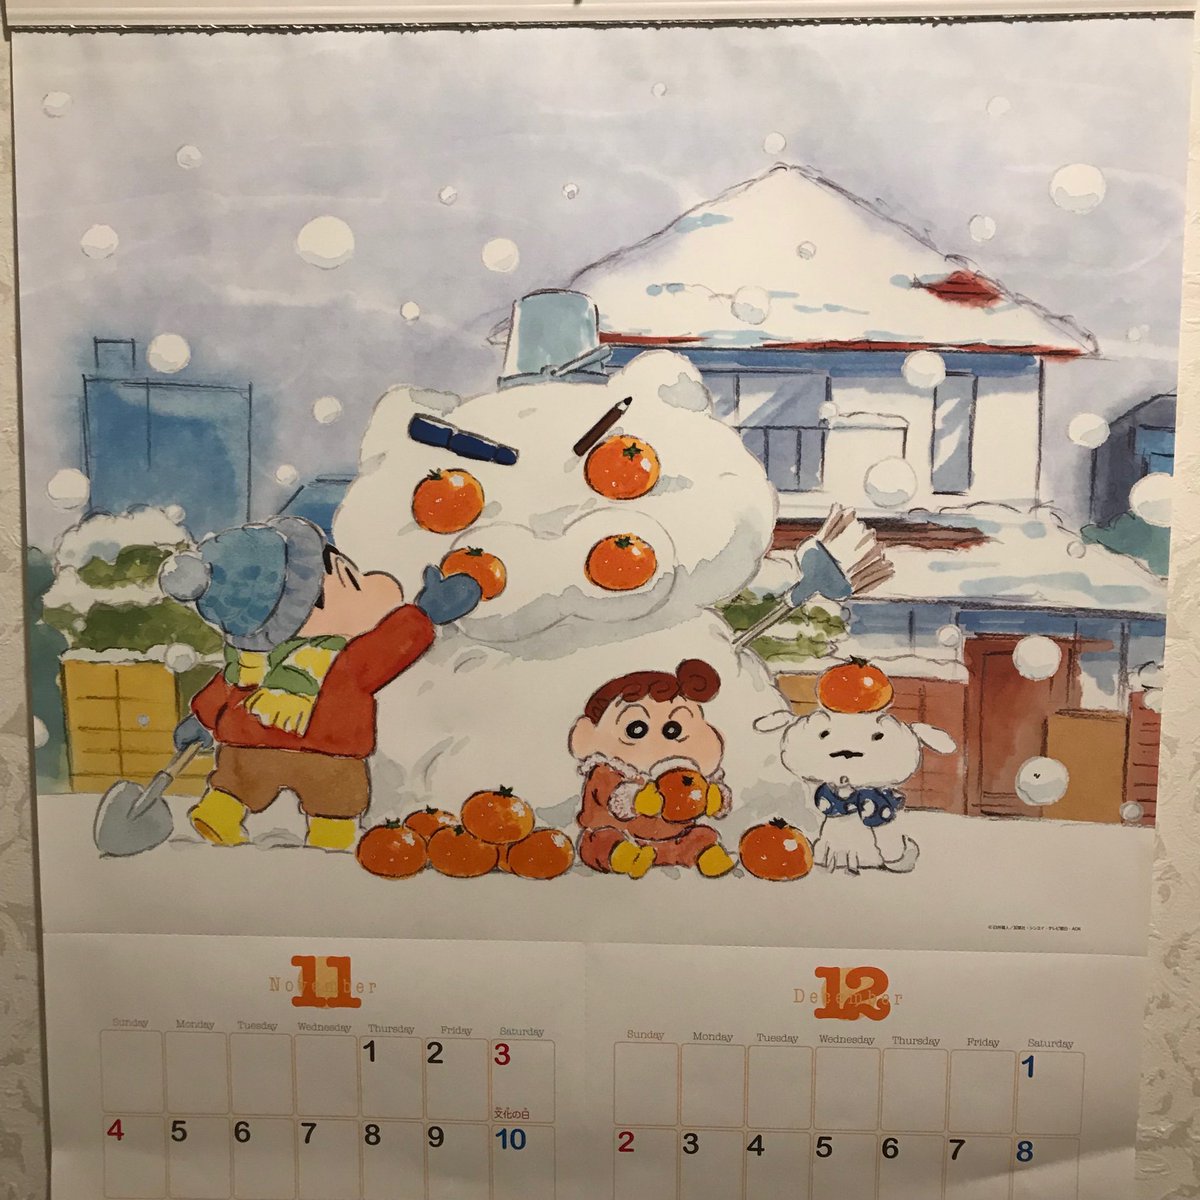 週刊大衆 twitterissa クレヨンしんちゃんカレンダーの2018年11月12月